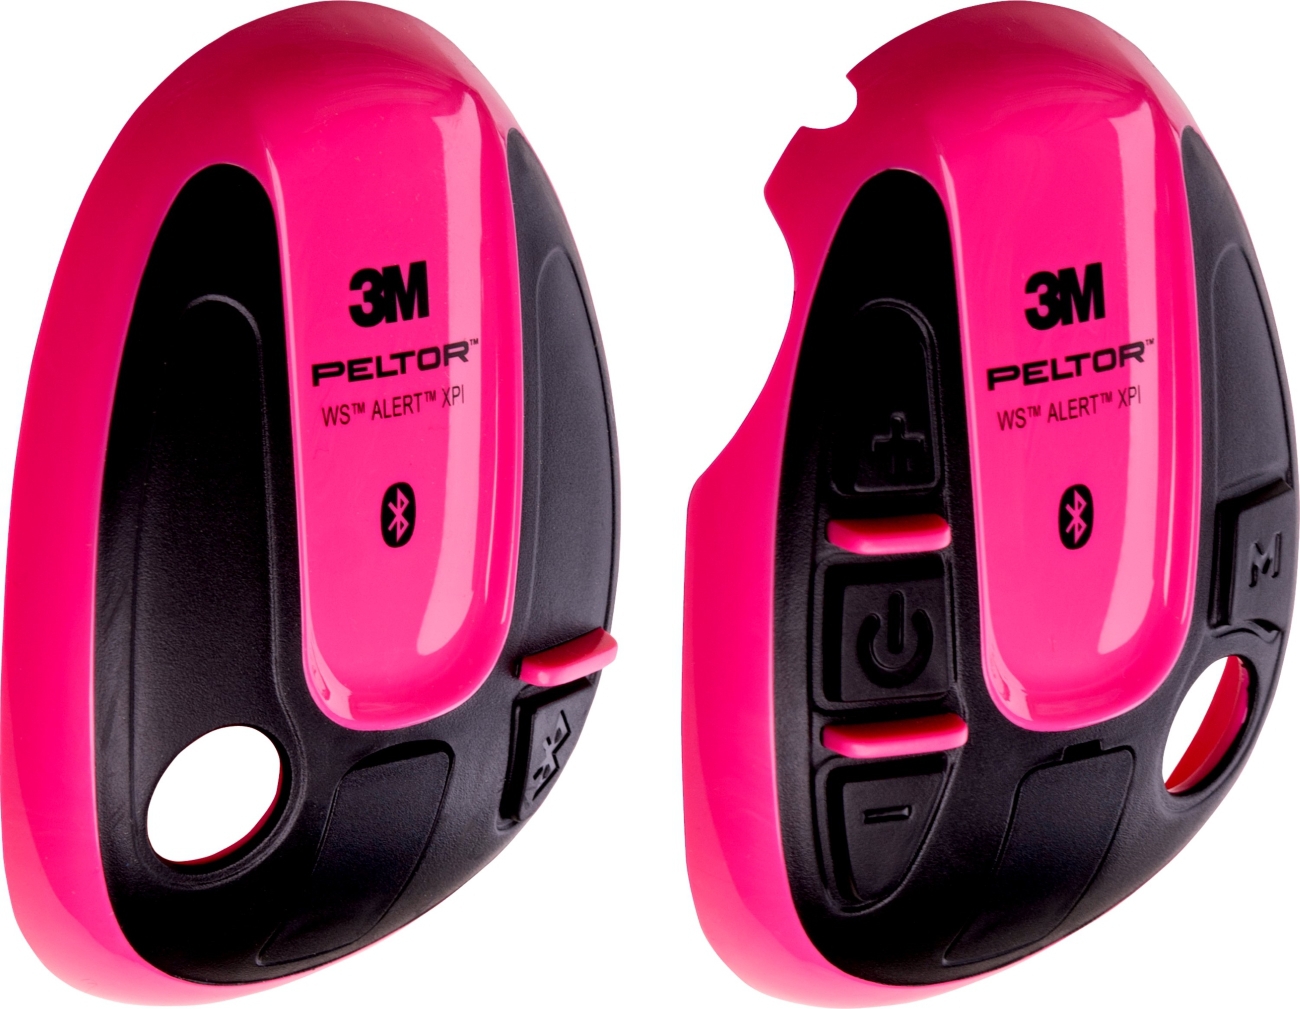 3M PELTOR-suojukset WS ALERT-kuulokkeille, vaaleanpunainen, 1 pari (vasen+oikea), 210300-664-RE/1